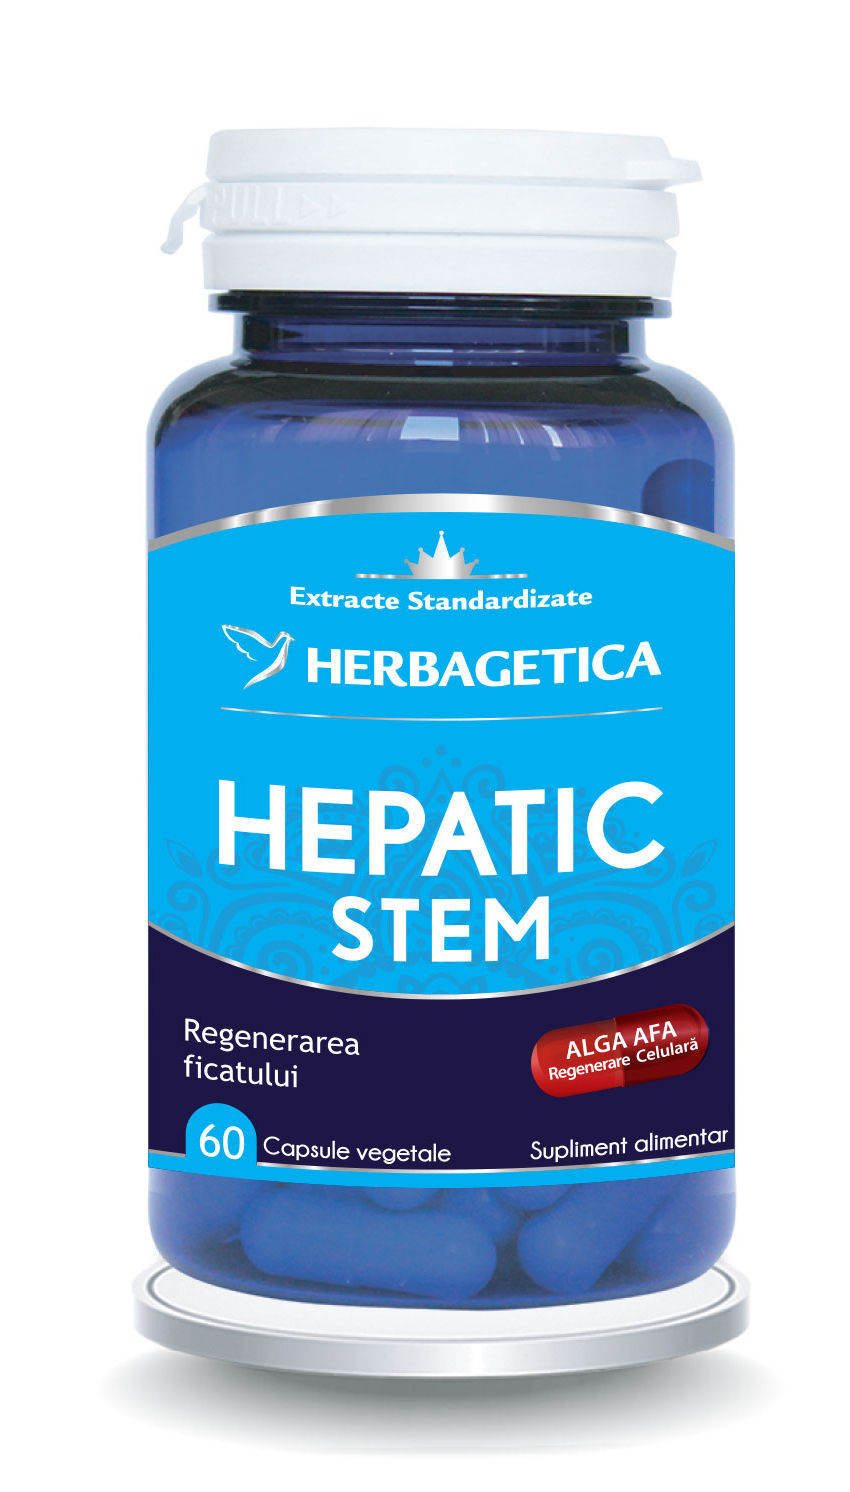 Hepatic stem